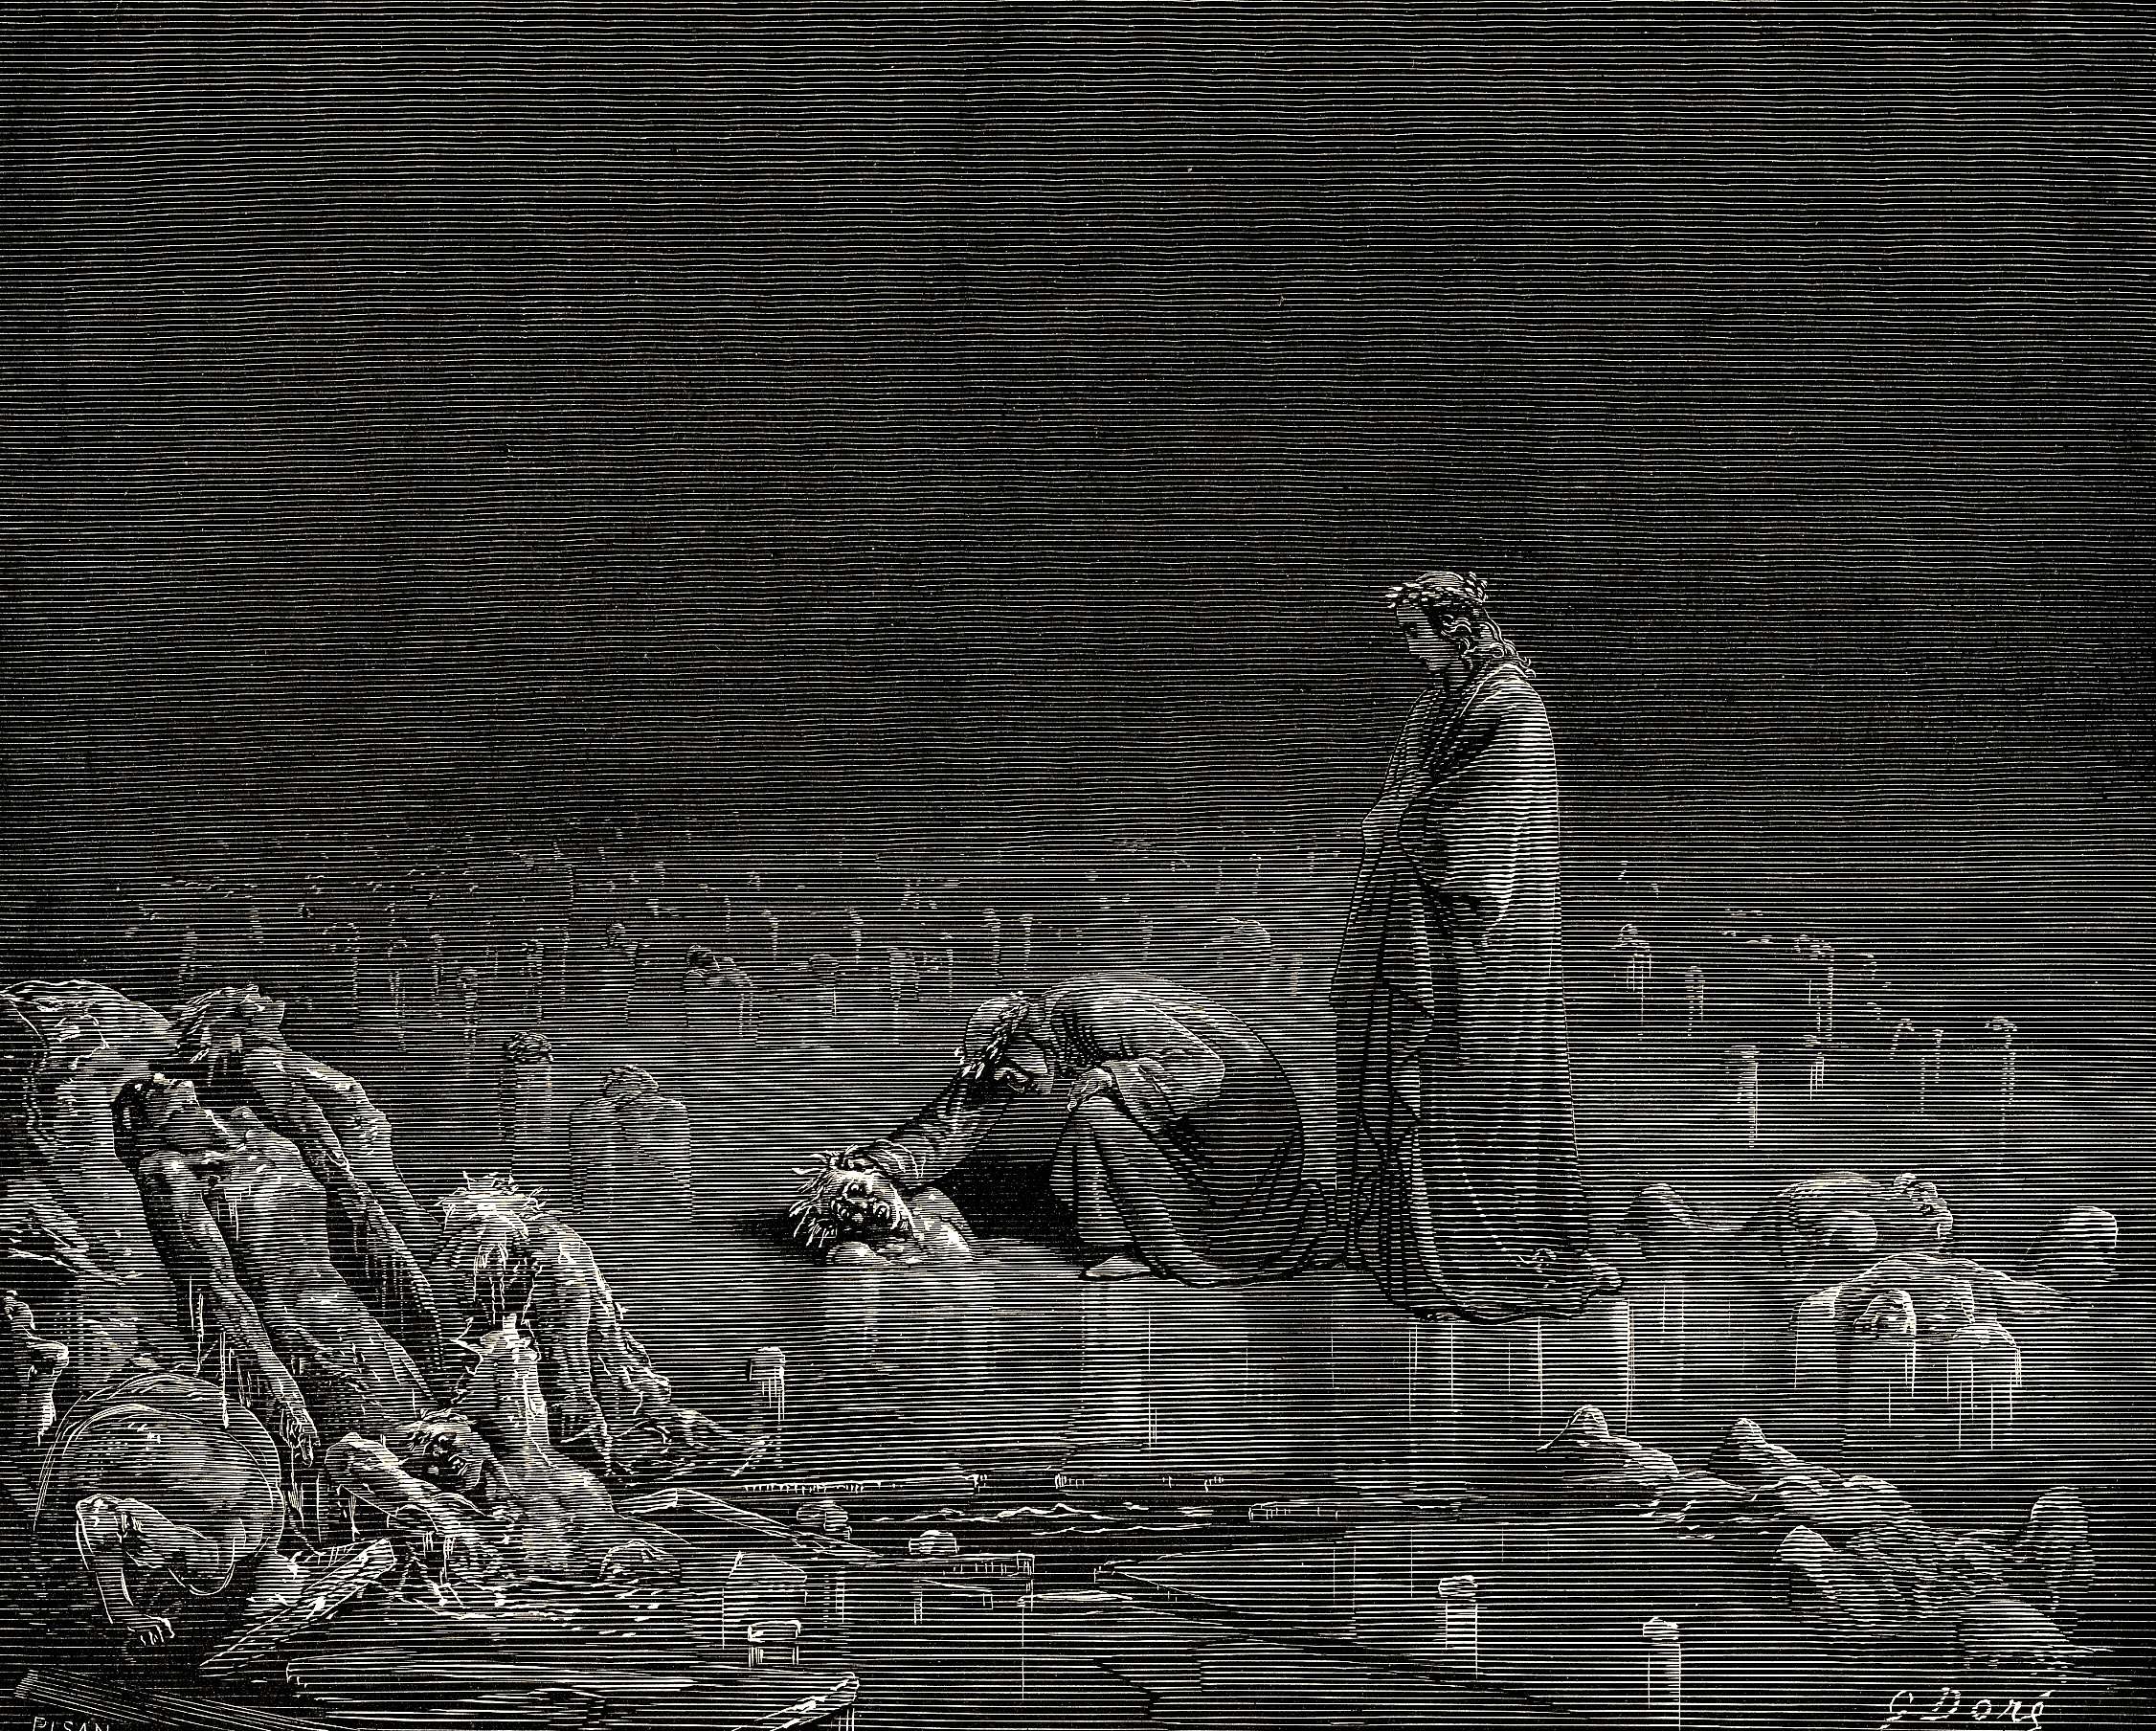 地獄第32詩章 by Gustave Doré - 1857 - - 